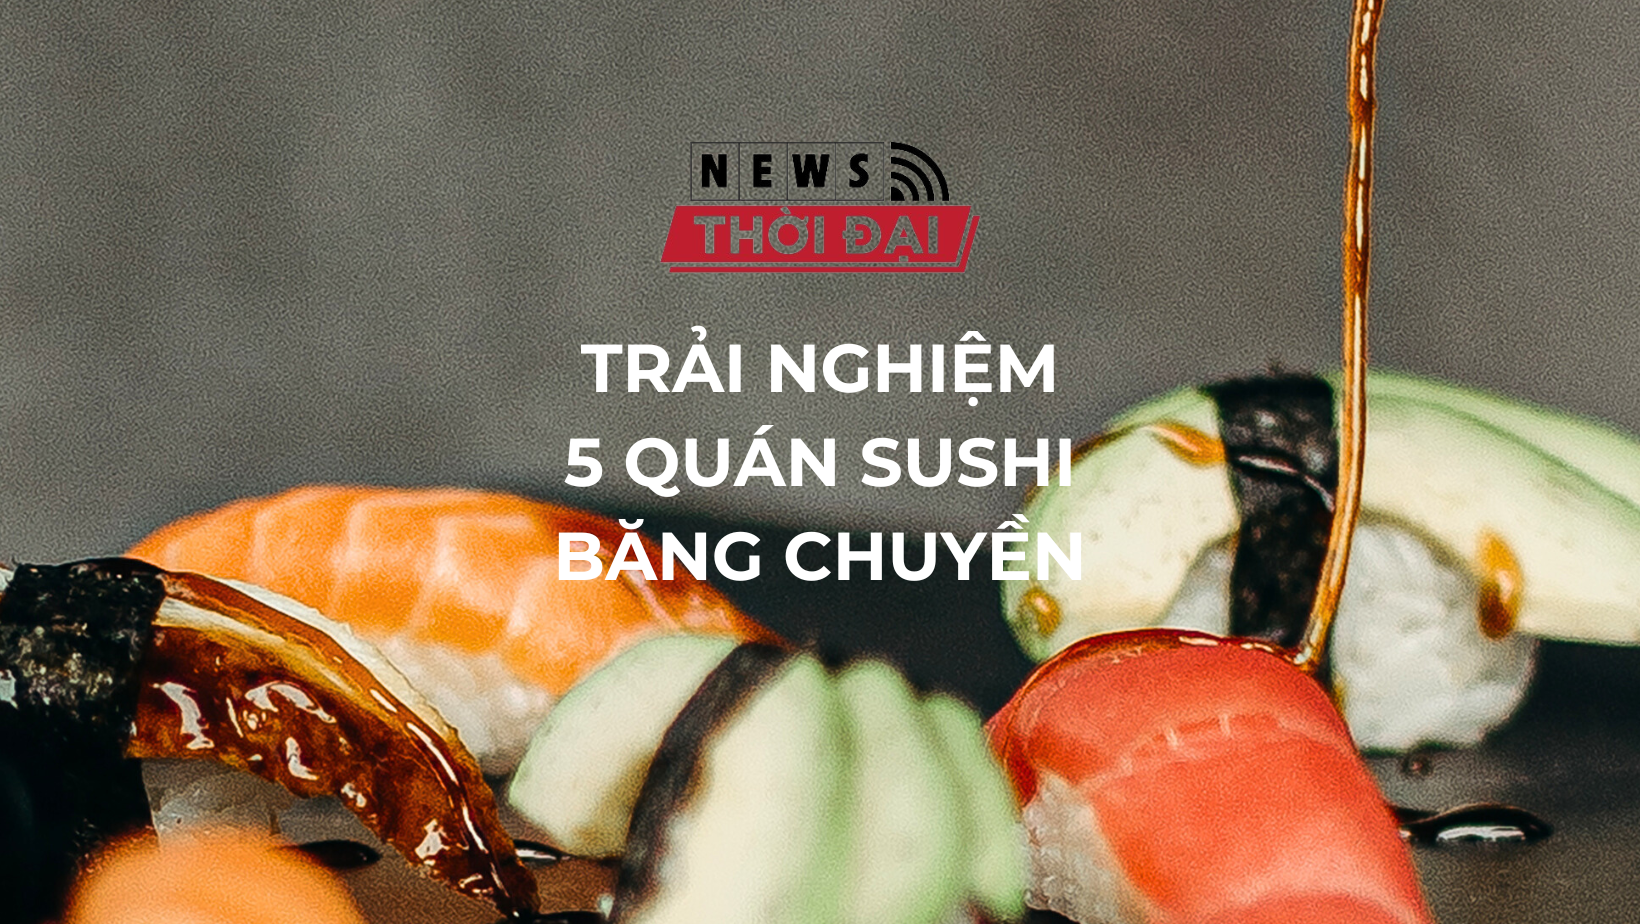 Trải nghiệm 5 quán sushi băng chuyền: hành trình ẩm thực Nhật Bản